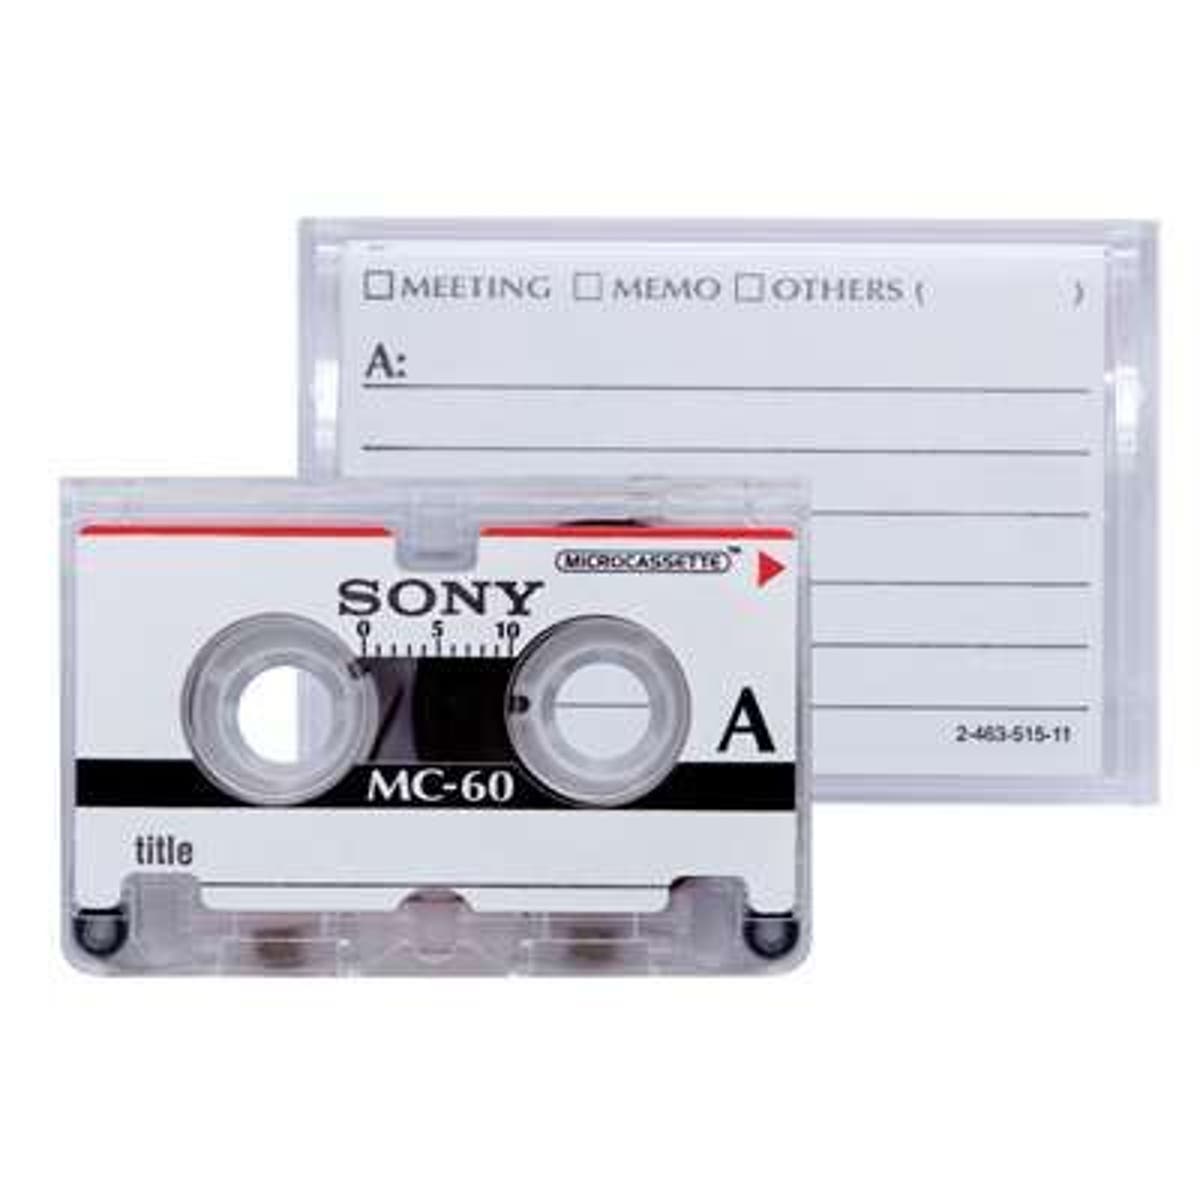 Las cintas de cassette se fabrican de nuevo, y vuelven en 2018